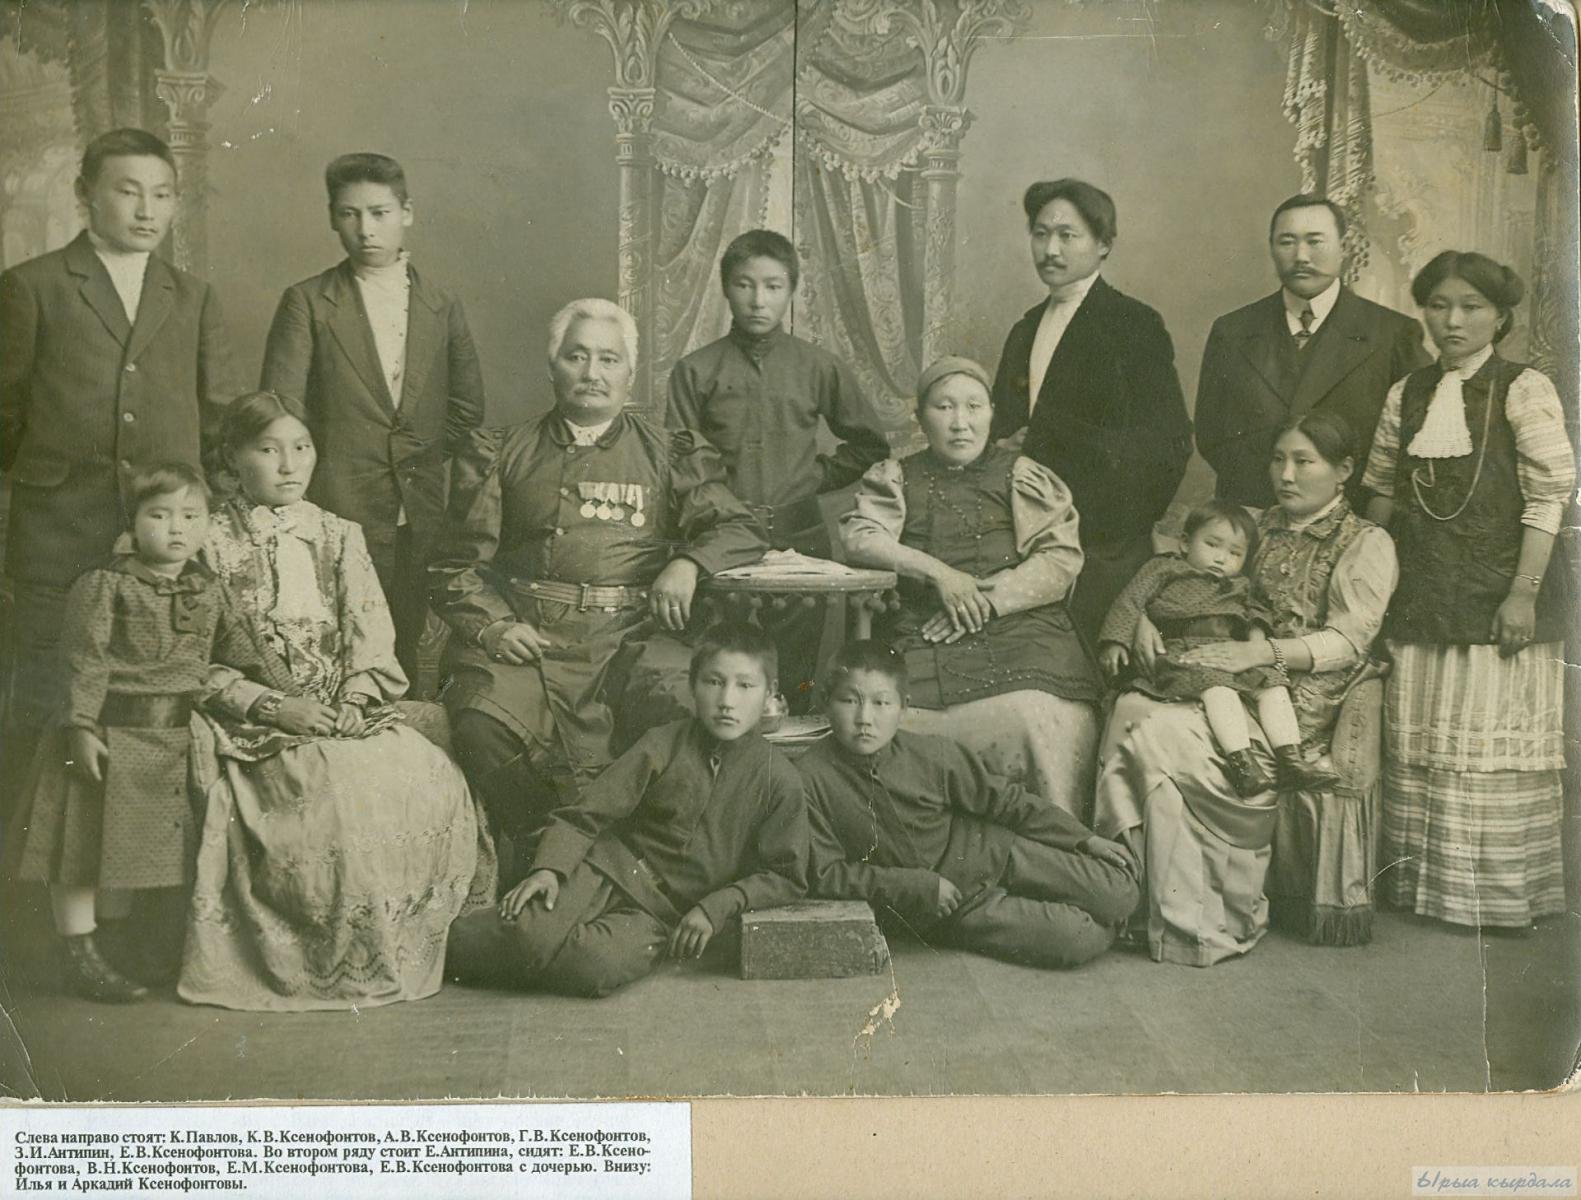 Семья Ксенофонтовых. Г.В. Ксенофонтов (третий справа) - автор труда "Ураанхай сахалар"